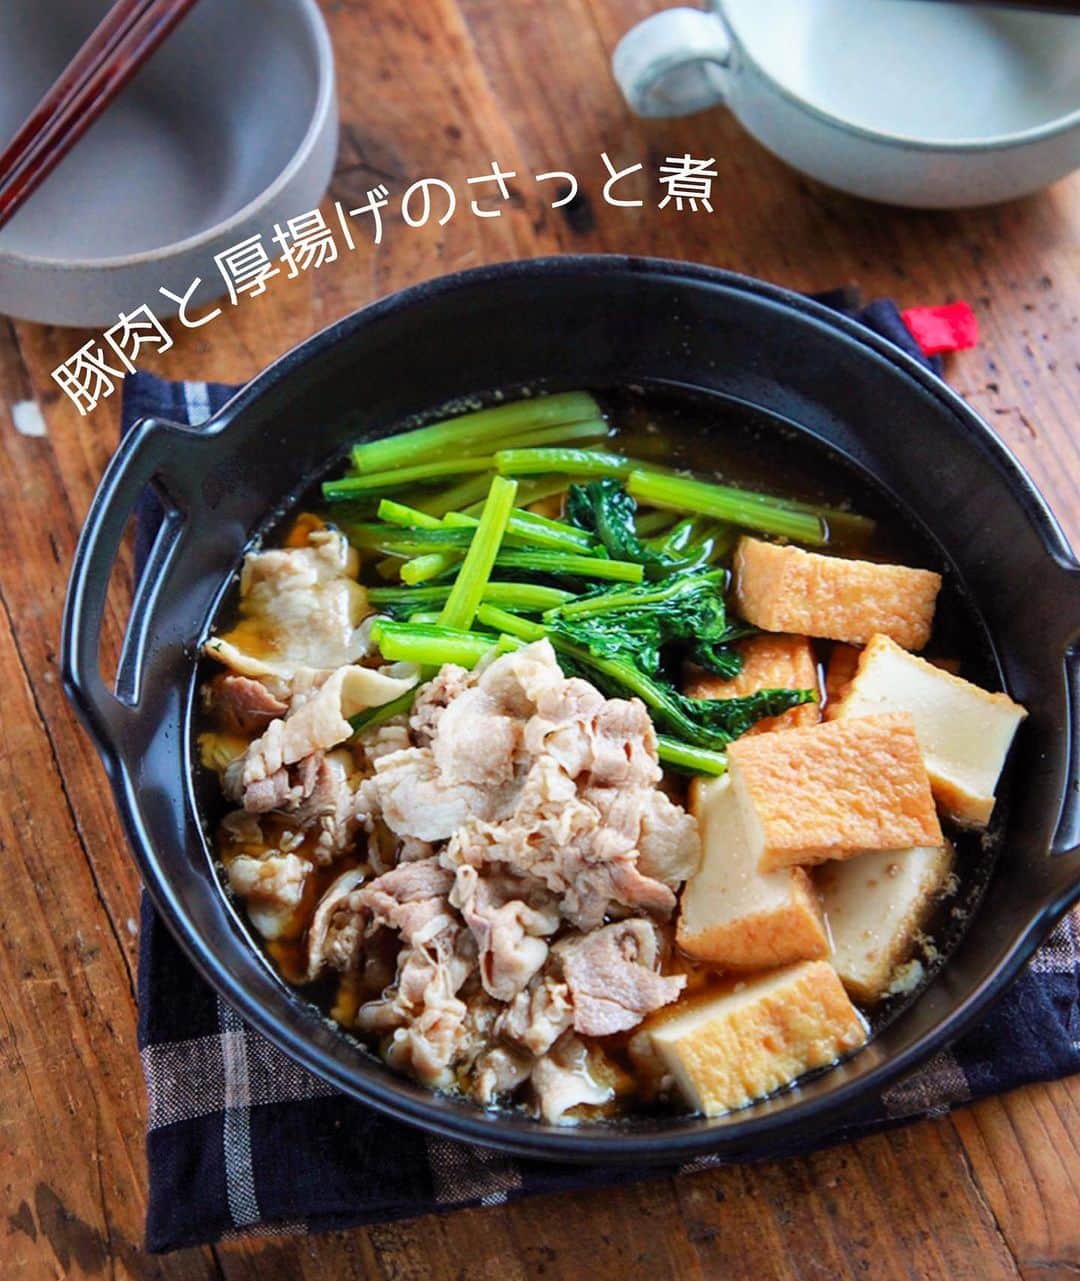 Mizuki【料理ブロガー・簡単レシピ】さんのインスタグラム写真 - (Mizuki【料理ブロガー・簡単レシピ】Instagram)「・﻿ 【#レシピ 】ーーーーーーーー﻿ ♡豚肉と厚揚げのさっと煮♡﻿ (2品献立提案あり)﻿ ーーーーーーーーーーーーーー﻿ ﻿ ﻿ ﻿ おはようございます(*^^*)﻿ ﻿ 今日ご紹介させていただくのは﻿ 豚肉と厚揚げのさっと煮♡﻿ 今回は小松菜も加えて﻿ バランスよく仕上げました♩﻿ あっさりコクのあるスープで﻿ とってもごはんに合いますよ〜♡﻿ ﻿ 作り方は超簡単(*´艸`)﻿ さっと煮るだけ！！﻿ あっという間にできるので﻿ お気軽にお試し下さいね(*^^*)﻿ ﻿ ﻿ ﻿ ＿＿＿＿＿＿＿＿＿＿＿＿＿＿＿＿＿＿＿＿﻿ 【2人分】﻿ 豚バラ薄切り肉...180g﻿ 厚揚げ...小1枚(150g)﻿ 小松菜...1/2束(100g)﻿ ●水...300ml﻿ ●醤油・みりん...各大1﻿ ●鶏がらスープ...小1﻿ ﻿ 1.豚肉と小松菜は5cm長さに切る。厚揚げは一口大に切る。﻿ 2.鍋に●を入れて中火にかけ、煮立ったら豚肉を加えてほぐす。色が変わったら厚揚げと小松菜も加えて4〜5分煮る。﻿ ￣￣￣￣￣￣￣￣￣￣￣￣￣￣￣￣￣￣￣￣﻿ ﻿ ﻿ ﻿ 《ポイント》﻿ ♦︎きのこ類を追加しても美味しいです♩﻿ ♦︎直径20cmの鍋を使用しています♩﻿ ﻿ ﻿ ﻿ ﻿ ﻿ ＿＿＿＿＿＿＿＿＿＿＿＿＿＿＿﻿ 🥣🥣🥣2品献立提案🥣🥣🥣﻿ ￣￣￣￣￣￣￣￣￣￣￣￣￣￣￣﻿ 【合間に作れるおすすめ副菜】﻿ >人参とツナの甘辛(P.89)﻿ >トマトの塩昆布和え(P.90)﻿ (#Mizukiの2品献立 より)﻿ ﻿ 【献立の段取り】﻿ さっと煮の材料をお鍋に入れたら﻿ 副菜にとりかかる🥢﻿ ﻿ ﻿ ﻿ ﻿ ﻿ 【⭐️発売中⭐️】﻿ _____________________________________﻿ \15分でいただきます/﻿ 📕#Mizukiの2品献立 📕﻿ (9月24日発売・マガジンハウス)﻿ ￣￣￣￣￣￣￣￣￣￣￣￣￣￣￣￣￣﻿ ﻿ 忙しい私たちには﻿ 2品くらいがちょうどいい！﻿ 『しんどくない献立、考えました』﻿ ￣￣￣￣￣￣￣￣￣￣￣￣￣￣￣￣﻿ ﻿ ーーーーーPART.1 ーーーーー﻿ 【Mizukiのお墨つき！２品献立ベスト10】﻿ 約15分でできる10献立をご紹介！﻿ メインは全部フライパン、副菜はレンチンor混ぜるだけ♡﻿ ﻿ ーーーーーPART.2 ーーーーー﻿ 【フライパンひとつ！今夜のメインおかず】﻿ 献立の主役になる肉や魚のおかず50品！﻿ Part3の副菜と組み合わせれば﻿ 献立のバリエーションが広がりますよ♩﻿ ﻿ ーーーーー PART.3 ーーーーー﻿ 【合間に作れる！ 野菜別かんたん副菜】﻿ レンチンor和えるだけの副菜レシピを﻿ 素材別にたっぷり収録♩﻿ ﻿ ーーーーー番外編ーーーーー﻿ 【ひとつで満足！ご飯＆麺】﻿ 【具だくさん！おかずスープ】﻿ 【オーブンいらずのおやつレシピ】﻿ ￣￣￣￣￣￣￣￣￣￣￣￣￣￣￣￣￣￣﻿ (ハイライトにリンク🔗あります💗)﻿ ﻿ ﻿ ﻿ ﻿ ﻿ ﻿ ﻿ ￣￣￣￣￣￣￣￣￣￣￣￣￣￣￣￣￣￣﻿ レシピを作って下さった際や﻿ レシピ本についてのご投稿には﻿ タグ付け( @mizuki_31cafe )して﻿ お知らせいただけると嬉しいです😊💕﻿ ﻿ ﻿ ﻿ ﻿ ﻿ #豚肉#厚揚げ#小松菜#煮物#Mizuki#簡単レシピ#時短レシピ#節約レシピ#料理#フーディーテーブル#マカロニメイト#おうちごはん#デリスタグラマー#料理好きな人と繋がりたい#食べ物#料理記録#おうちごはんlover#写真好きな人と繋がりたい#foodpic#cooking#recipe#lin_stagrammer#foodporn#yummy#f52grams#豚肉と厚揚げのさっと煮m」9月26日 7時45分 - mizuki_31cafe